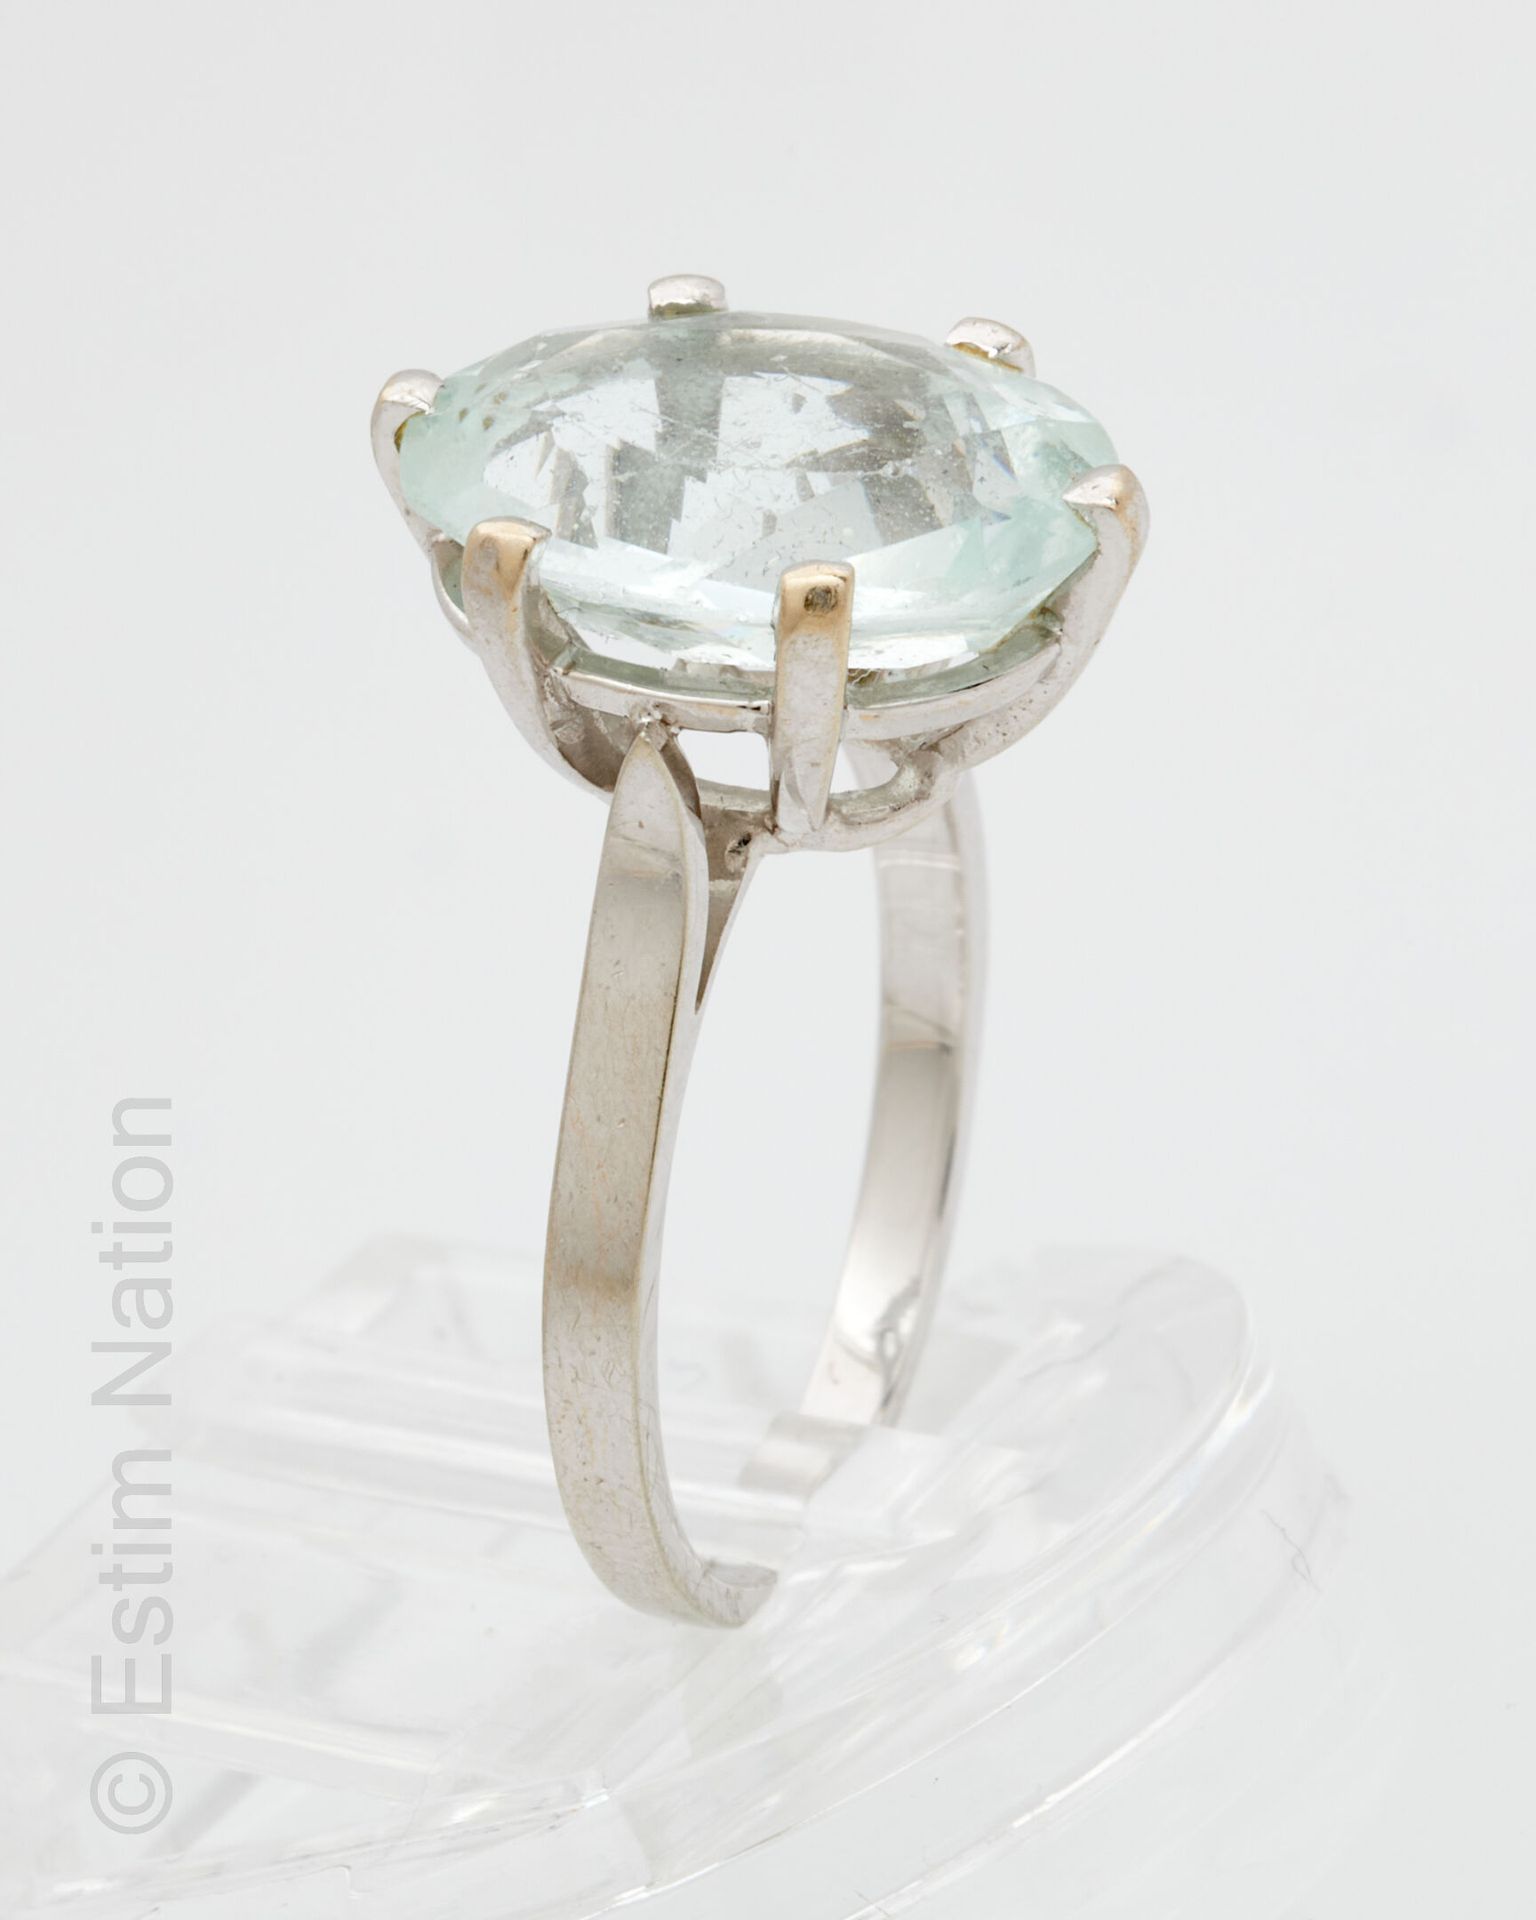 BAGUE OR GRIS ET AIGUE MARINE 18K（750千分之一）白金戒指，爪式镶嵌椭圆形琢面海蓝宝石。手指周长：48。 毛重：3.1克。